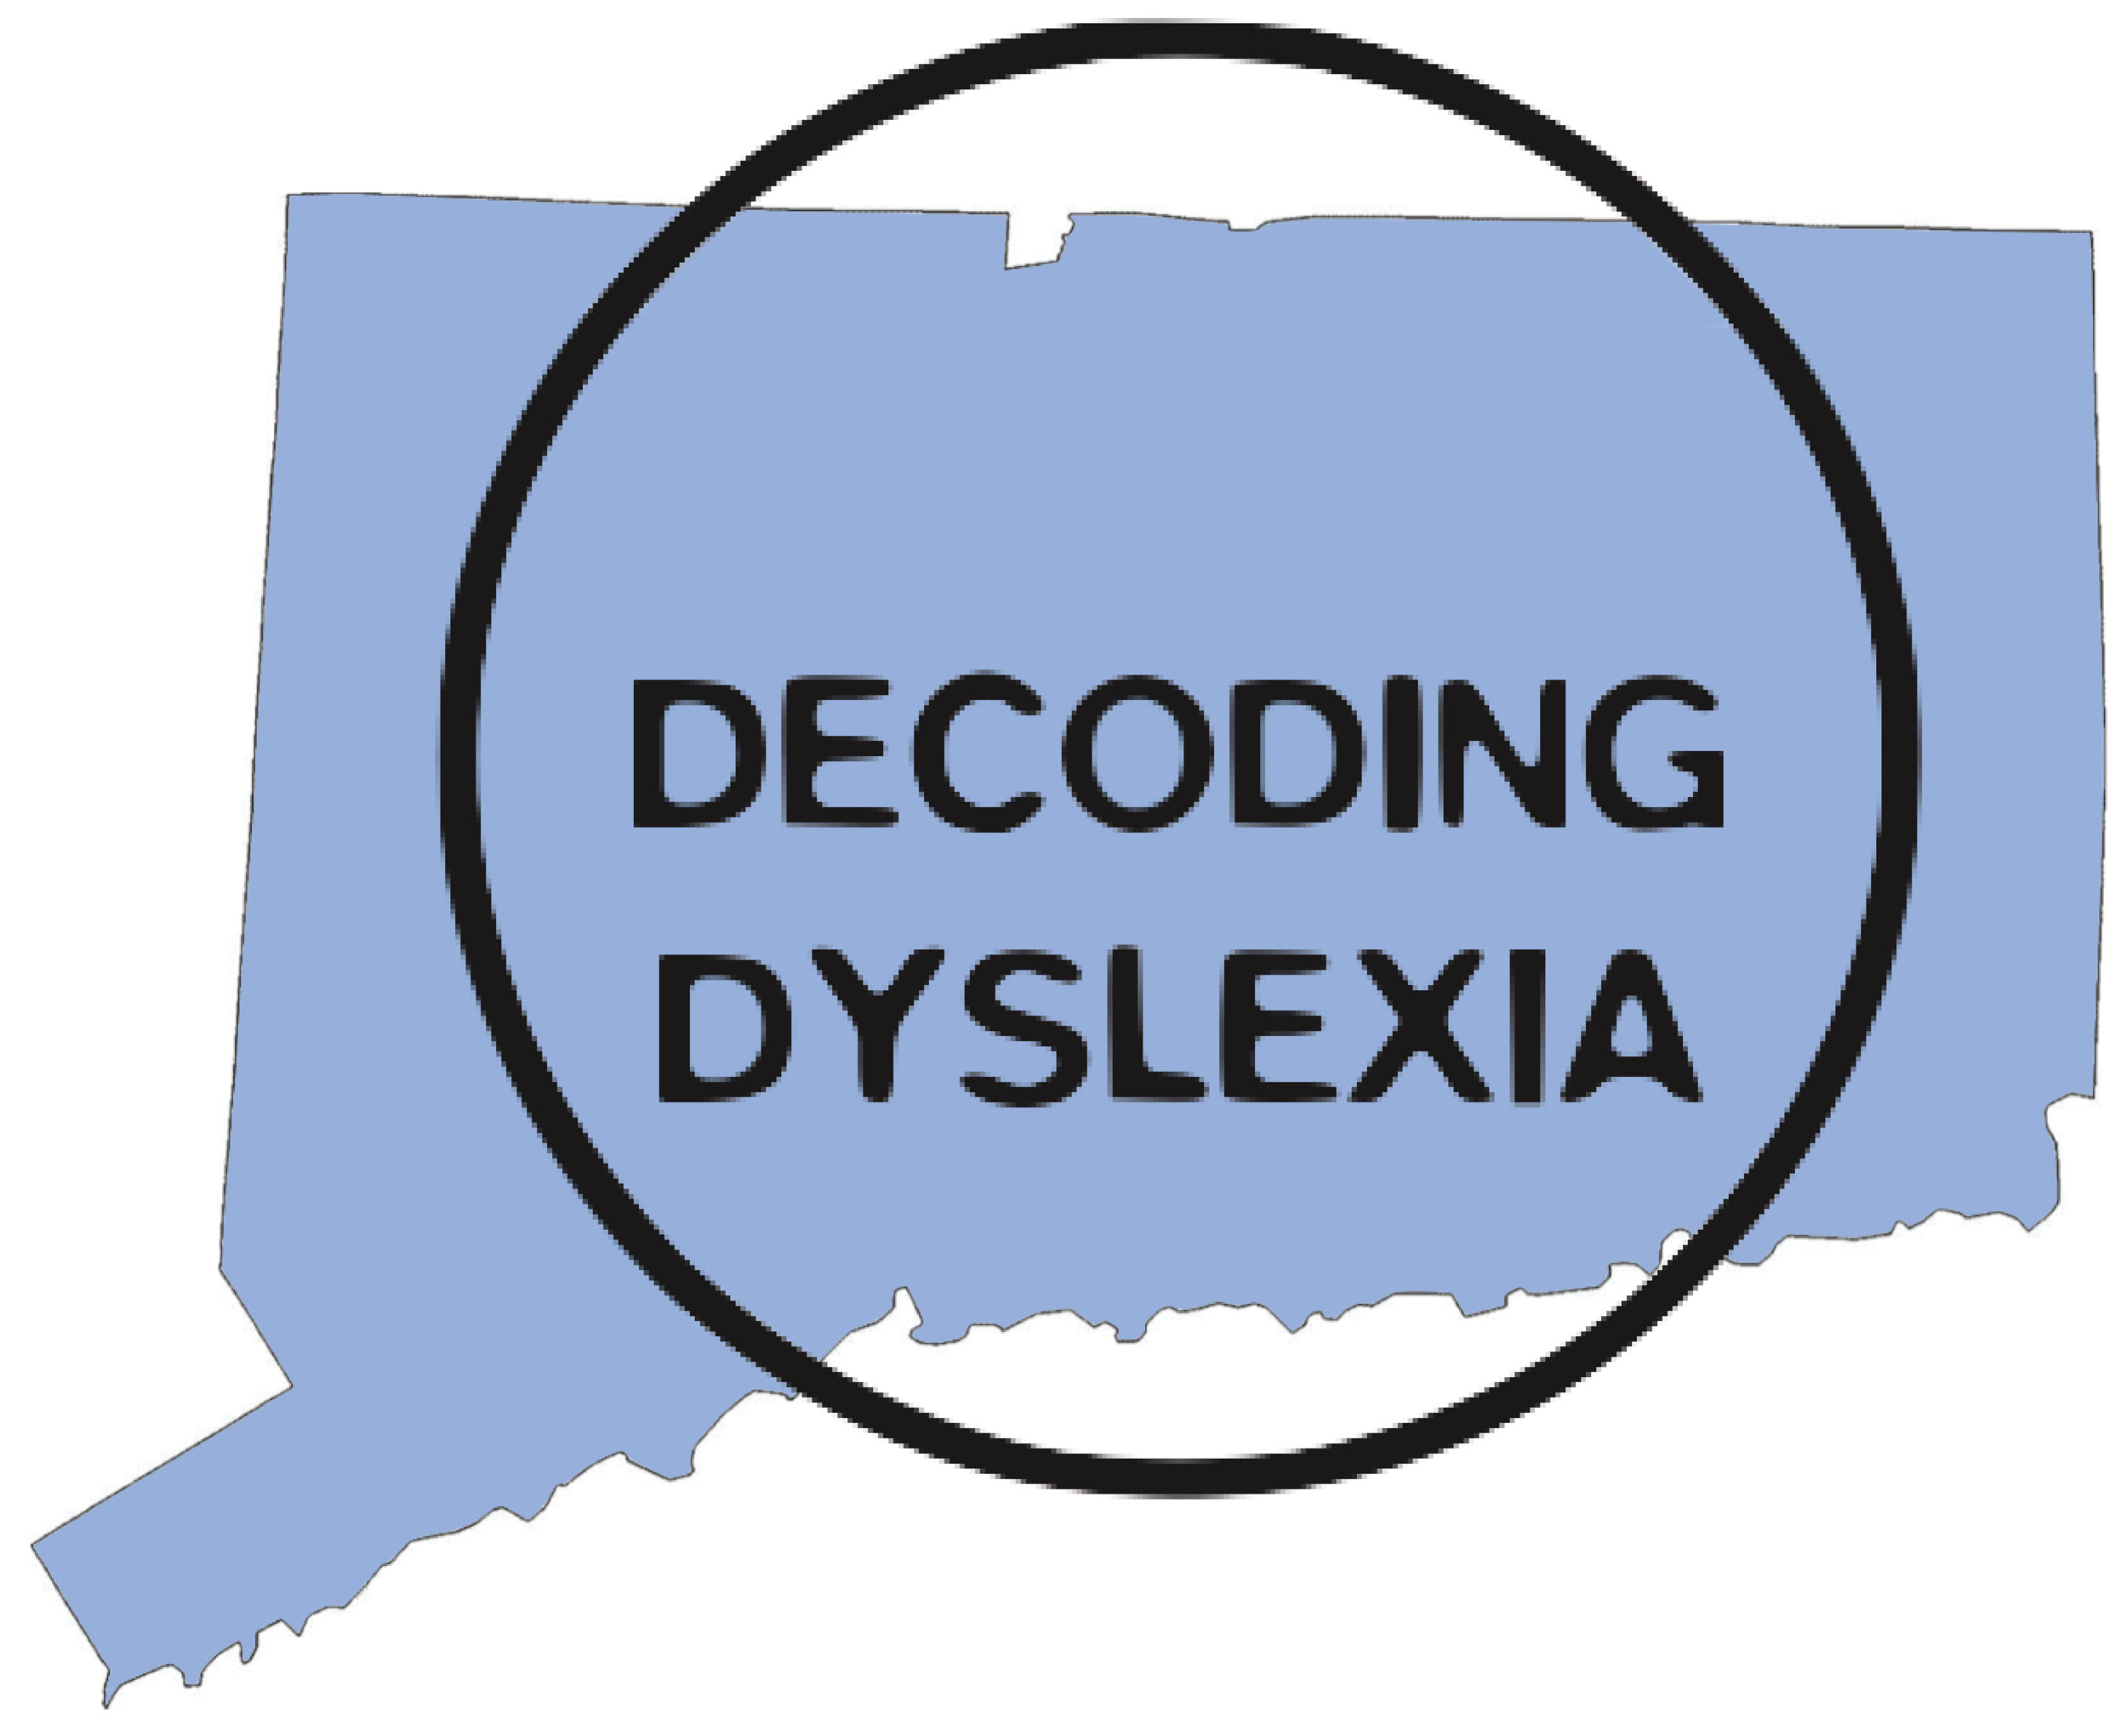 Decoding Dyslexia